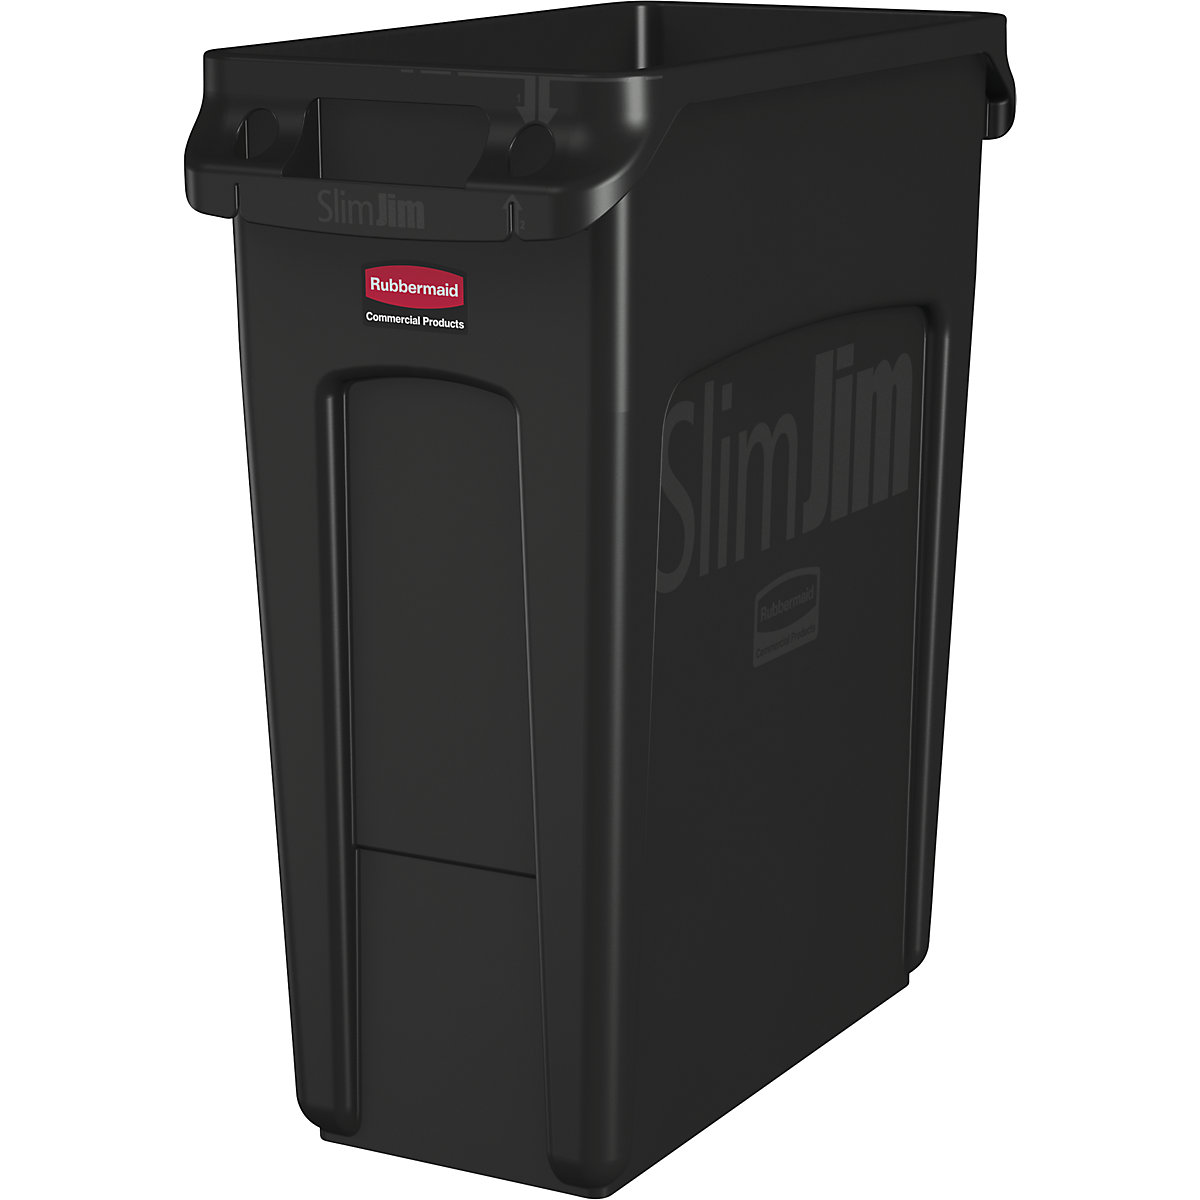 SLIM JIM® szelektív hulladékgyűjtő/szemetesvödör – Rubbermaid